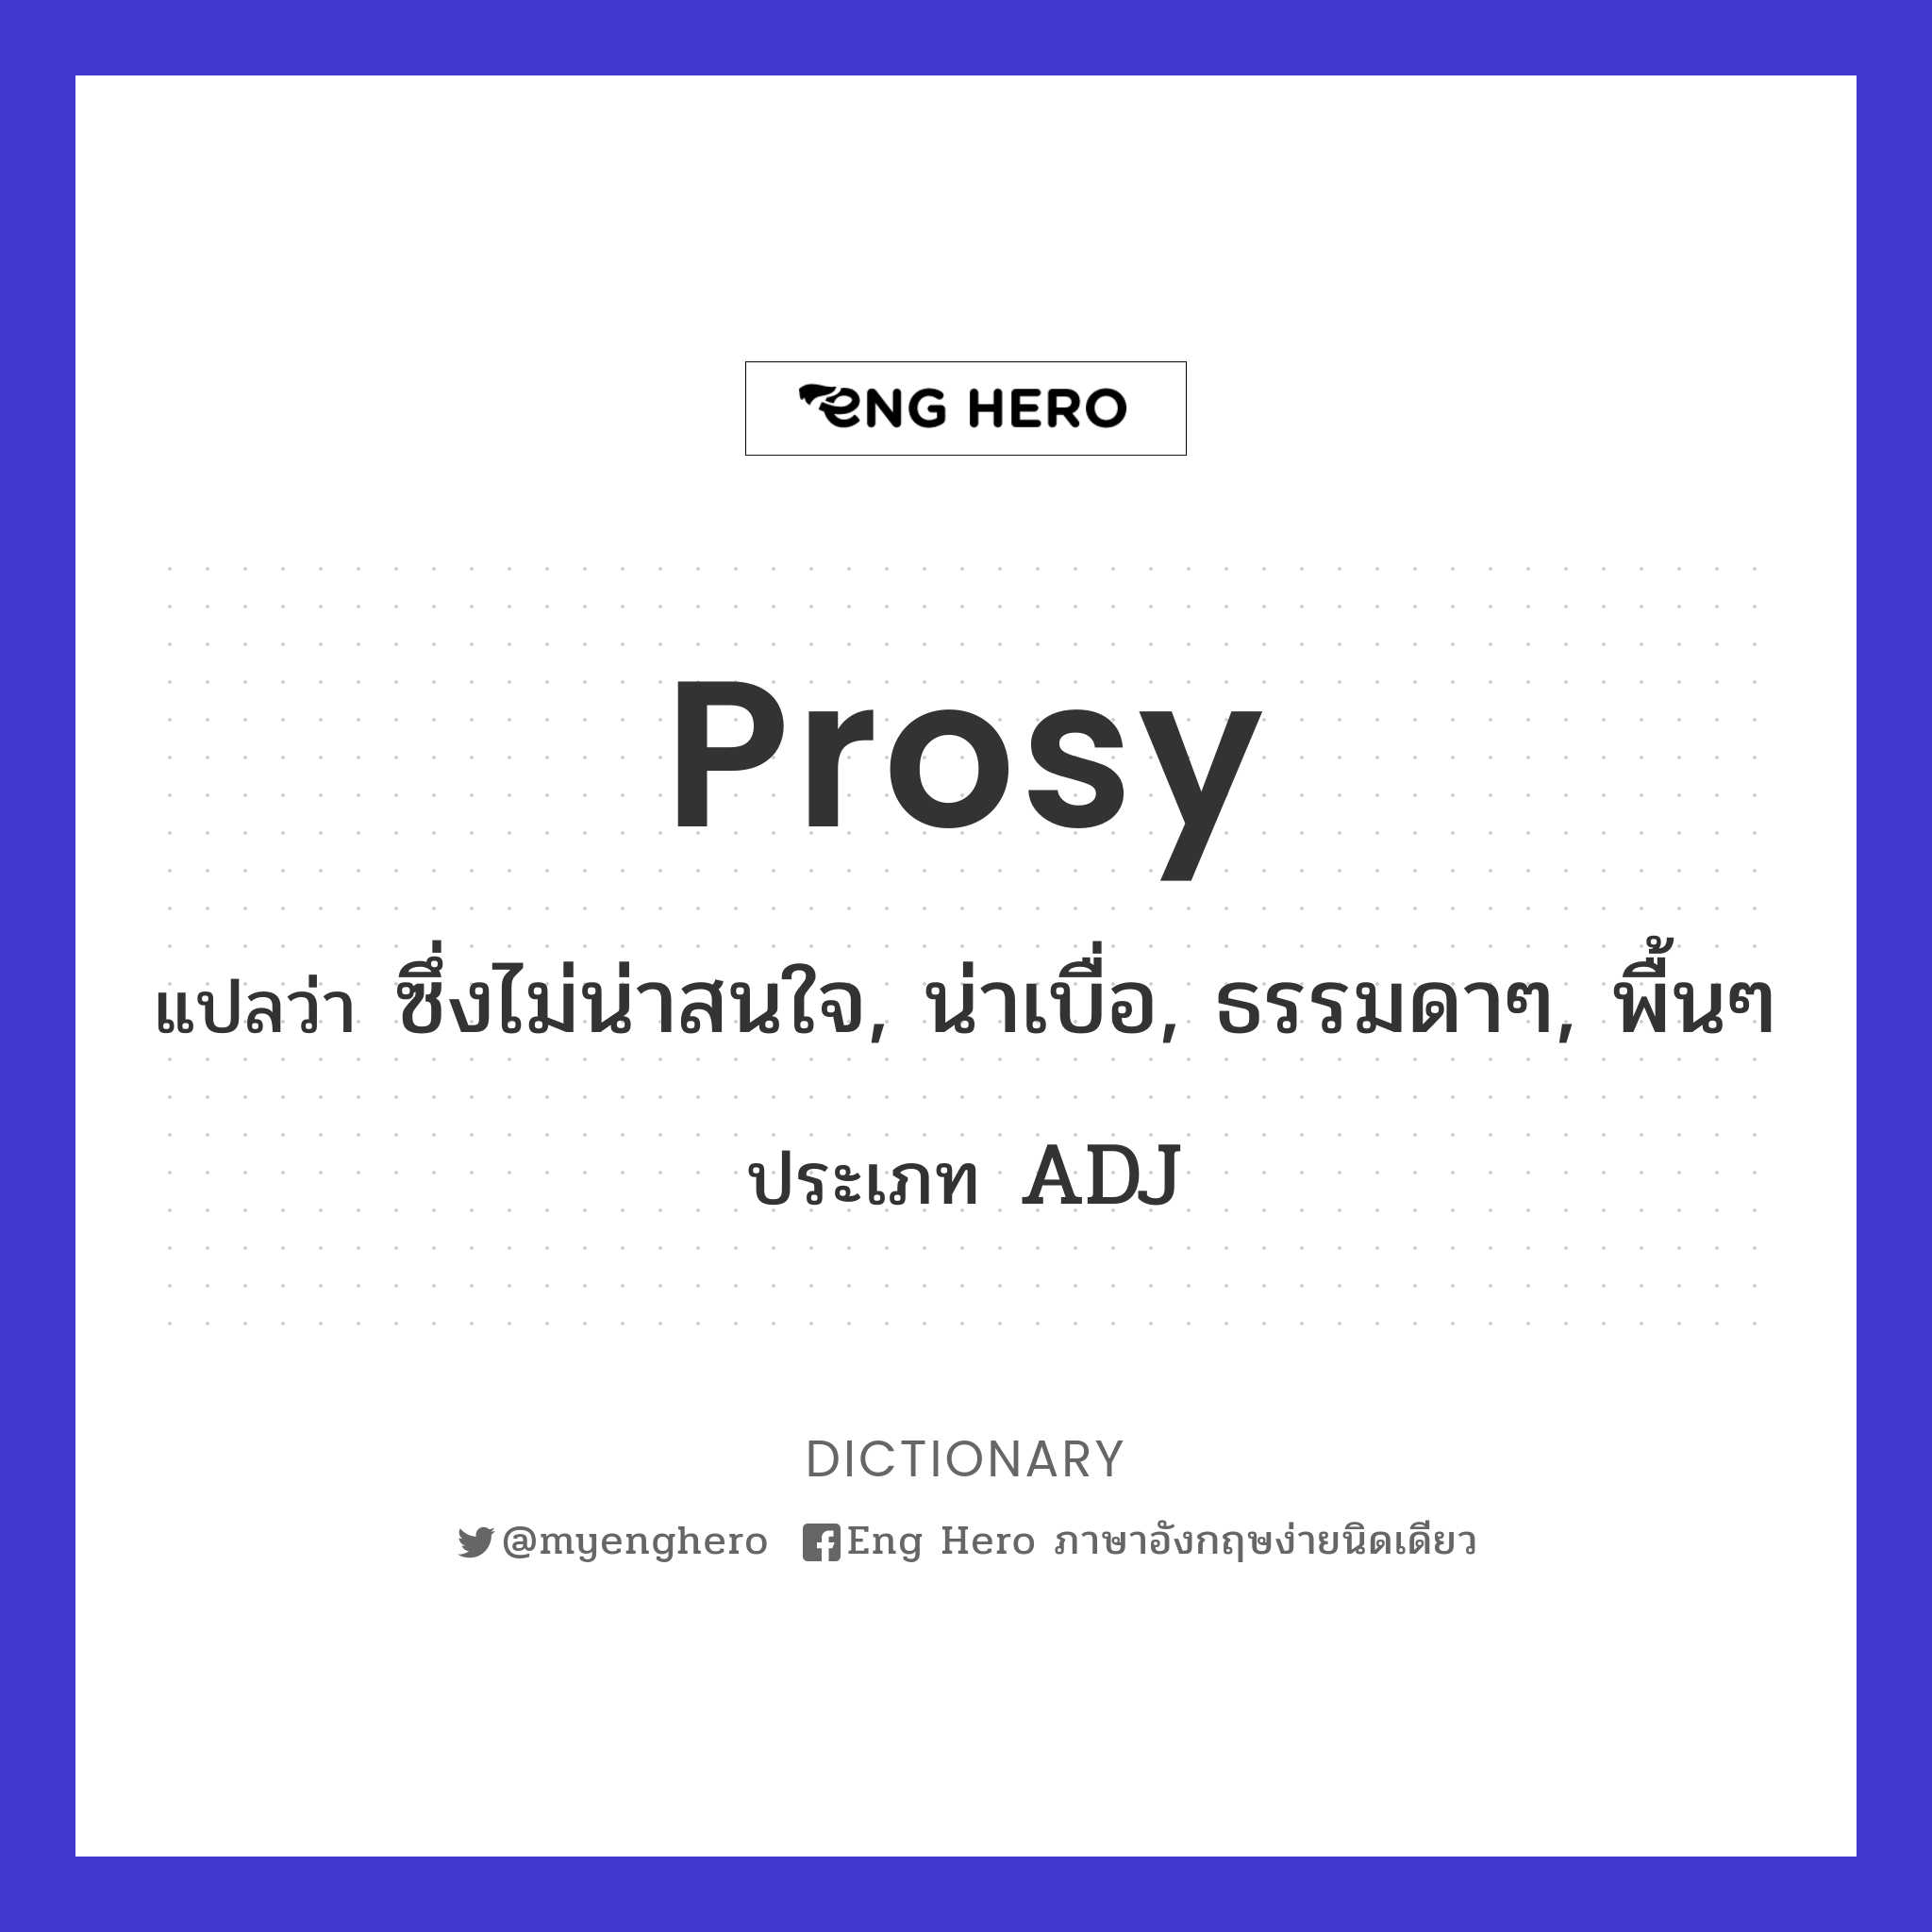 prosy